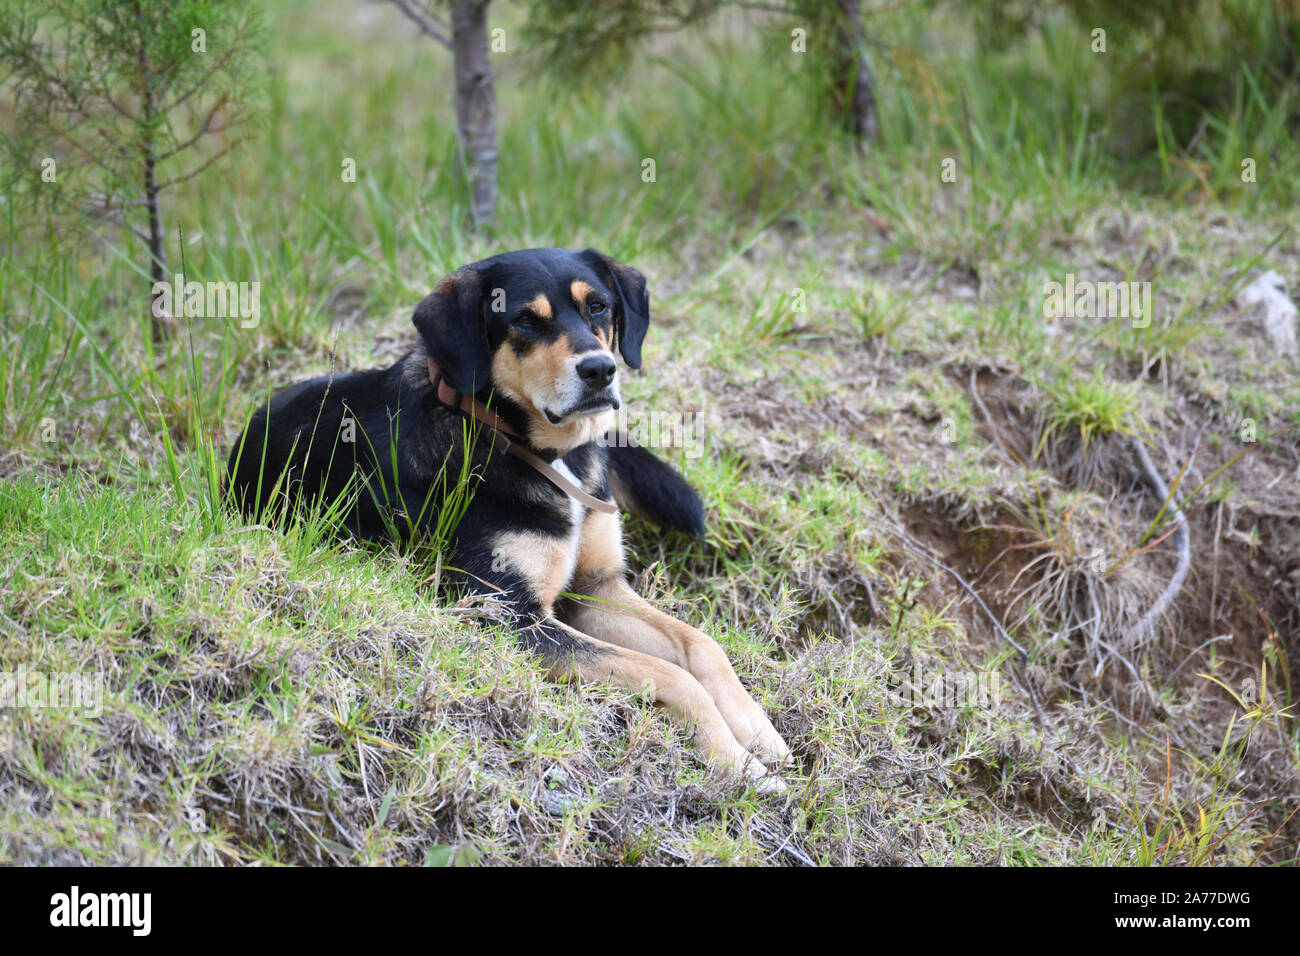 Big Black Dog shepperd sentar fuera en un campo de hierba verde Foto de stock